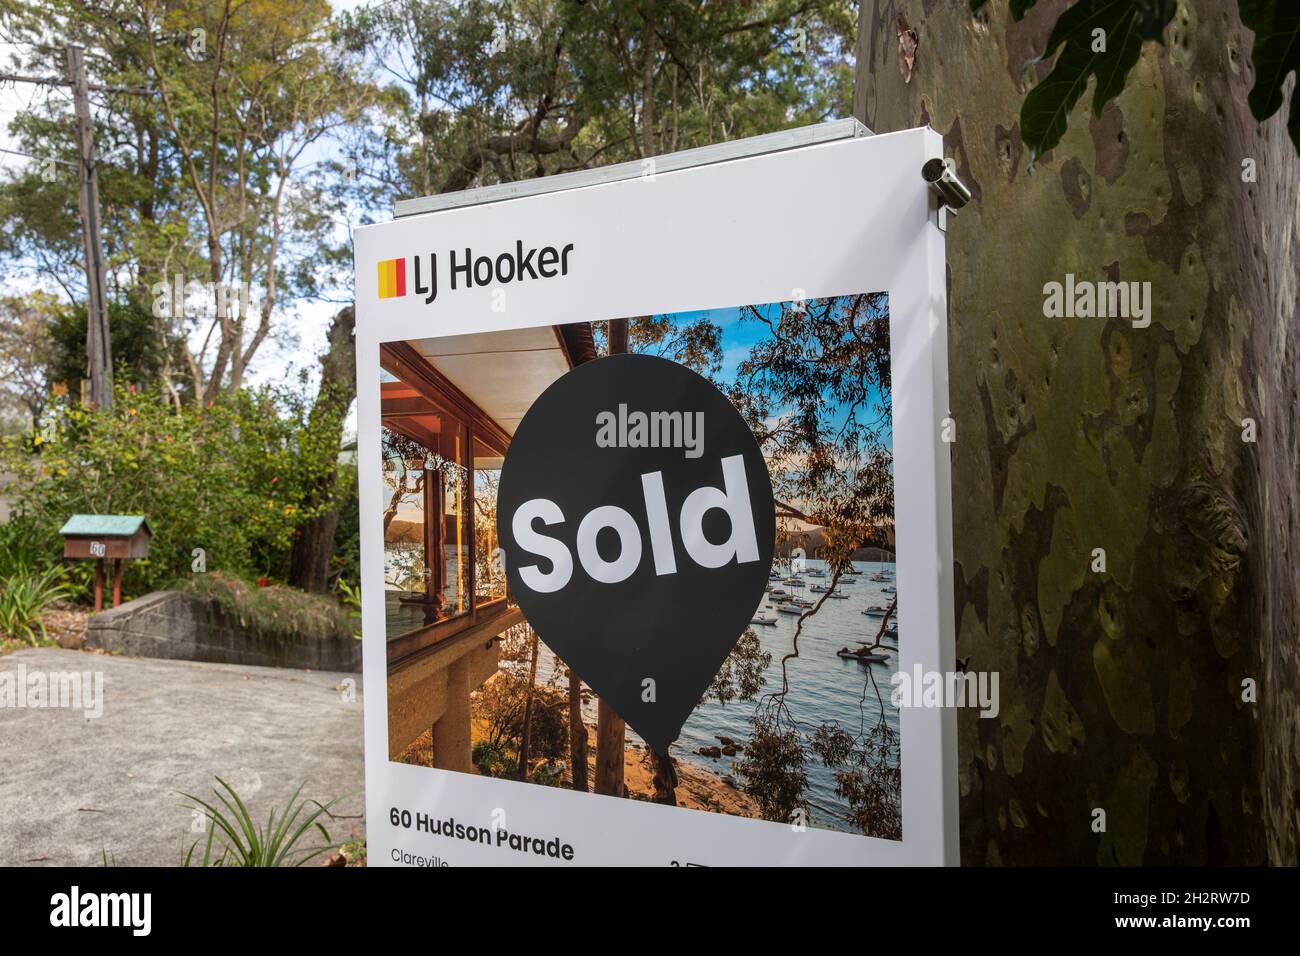 Clareville in Sydney, LJ Hooker agente immobiliare ha venduto una proprietà sul lungomare in un mercato riscaldato di proprietà di Sydney, NSW, Australia Foto Stock